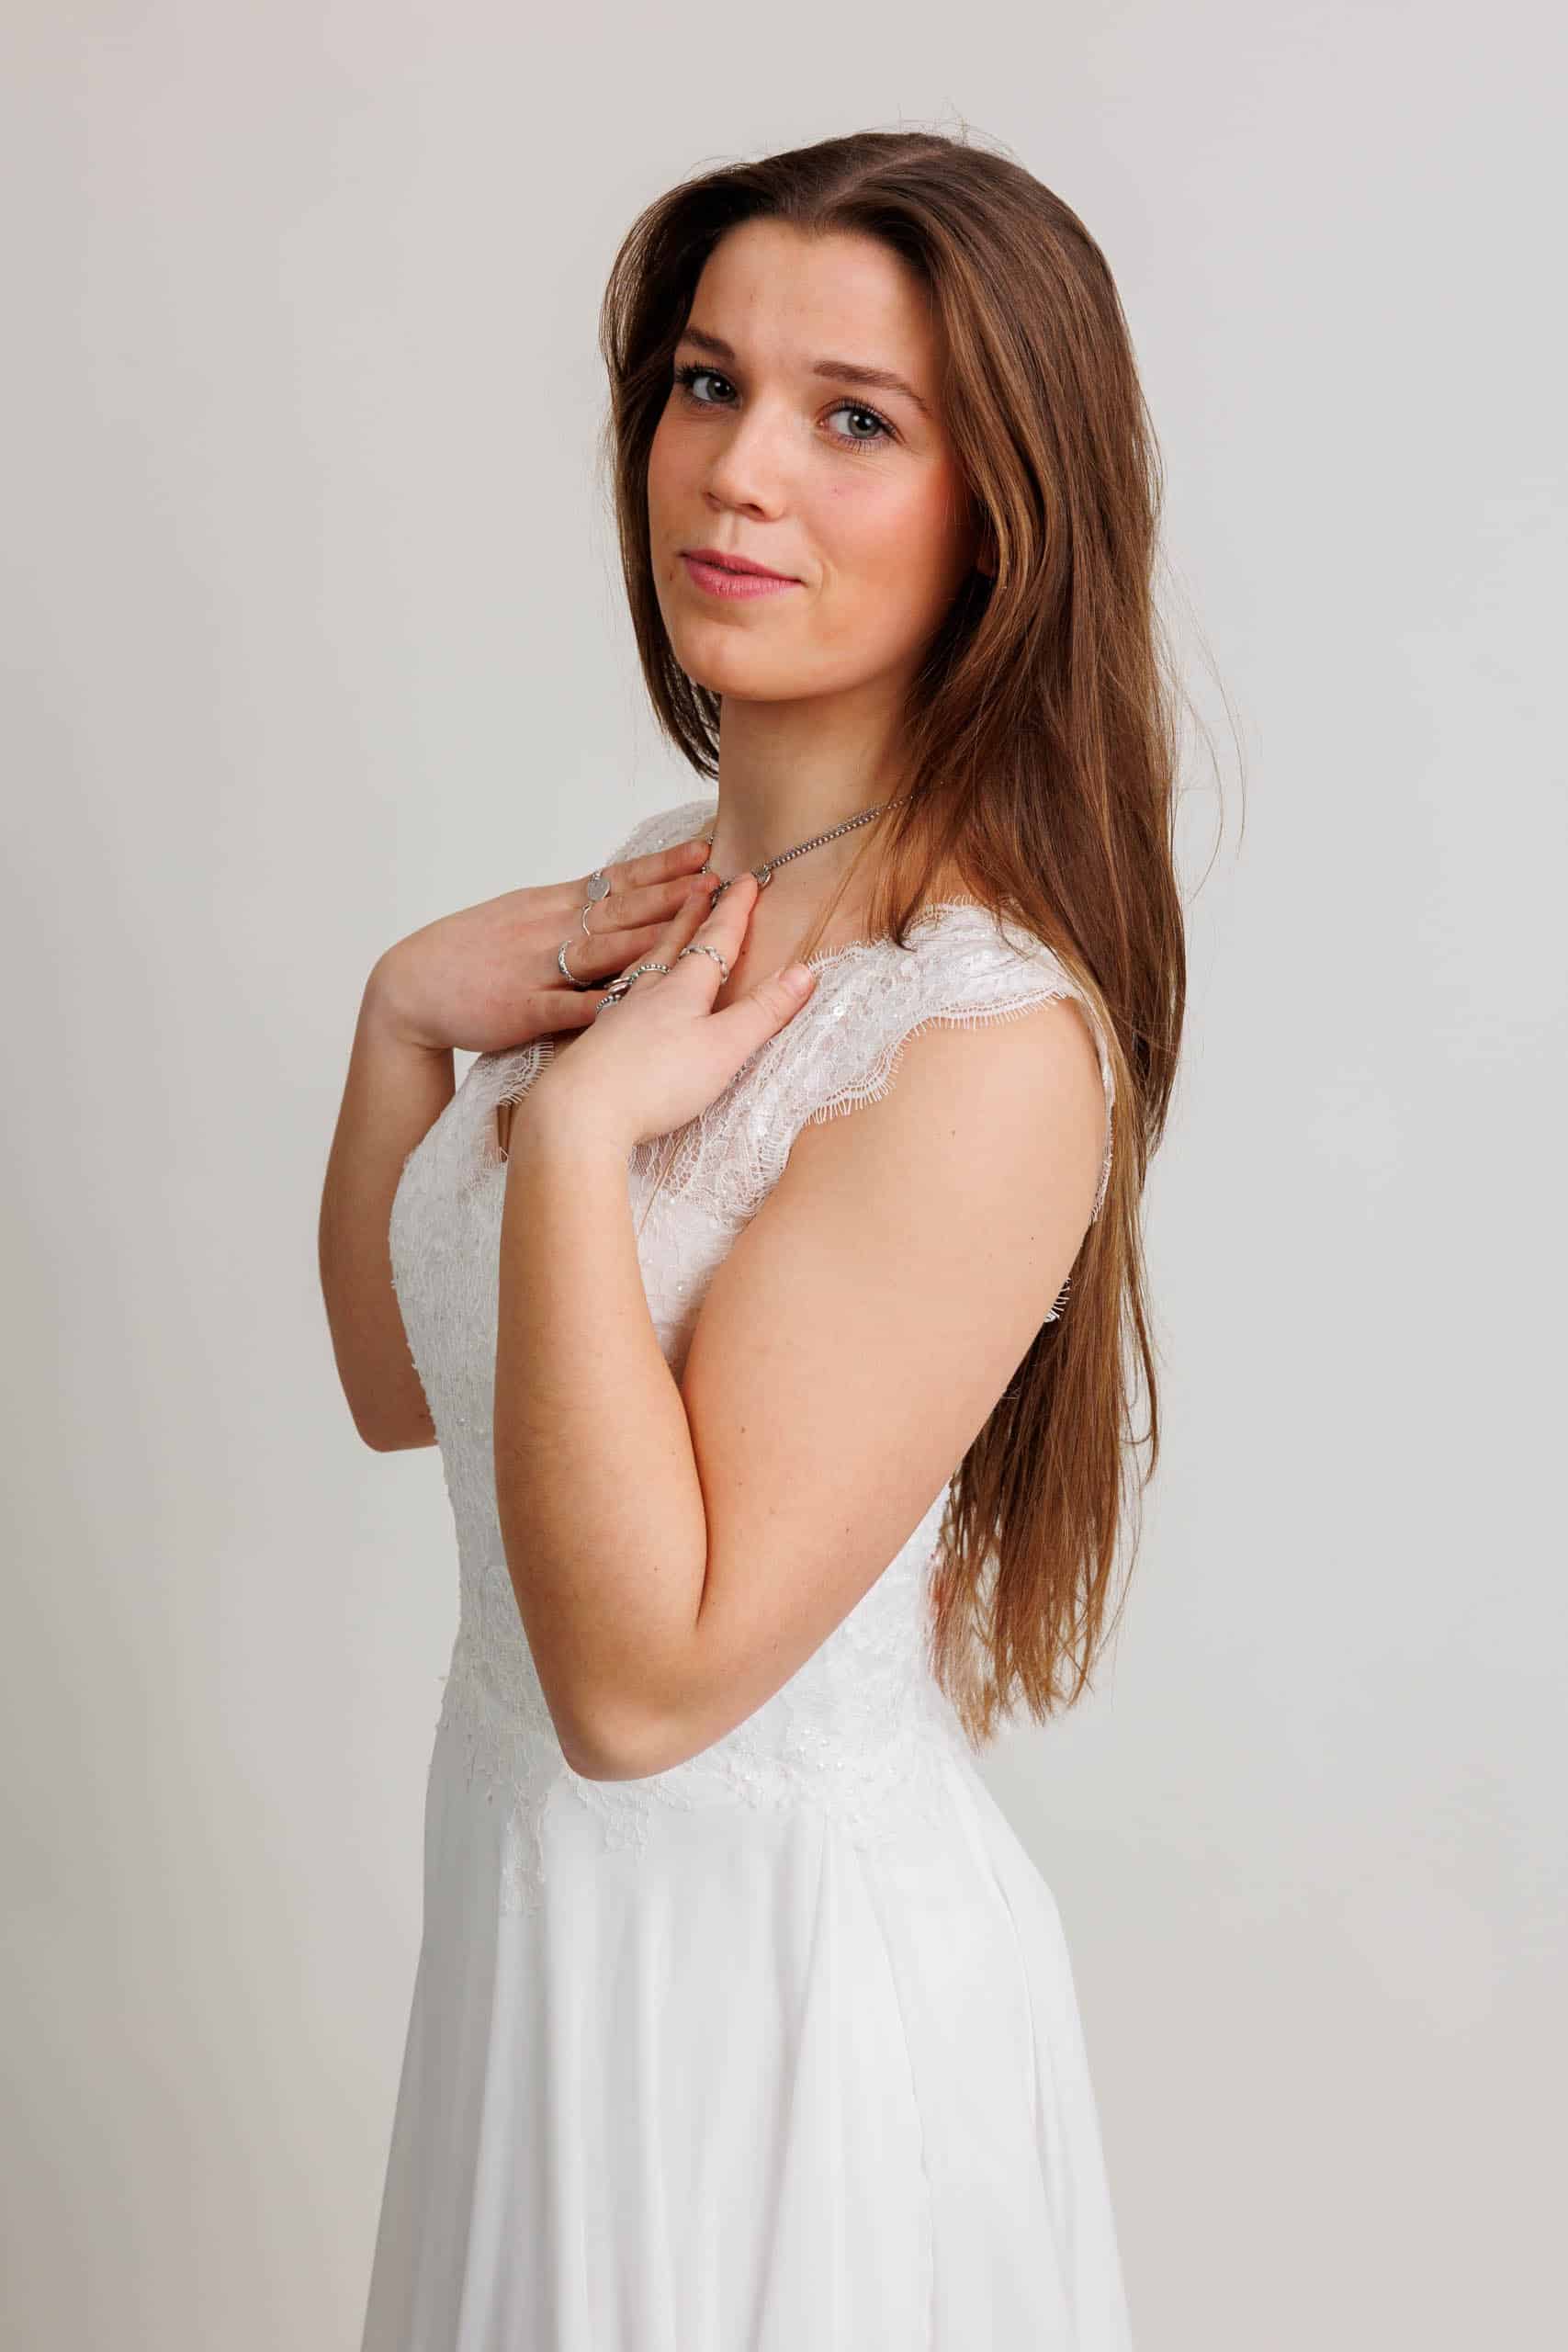 Een jonge vrouw in een witte jurk poseert voor een foto terwijl ze voor de lol trouwjurken past.